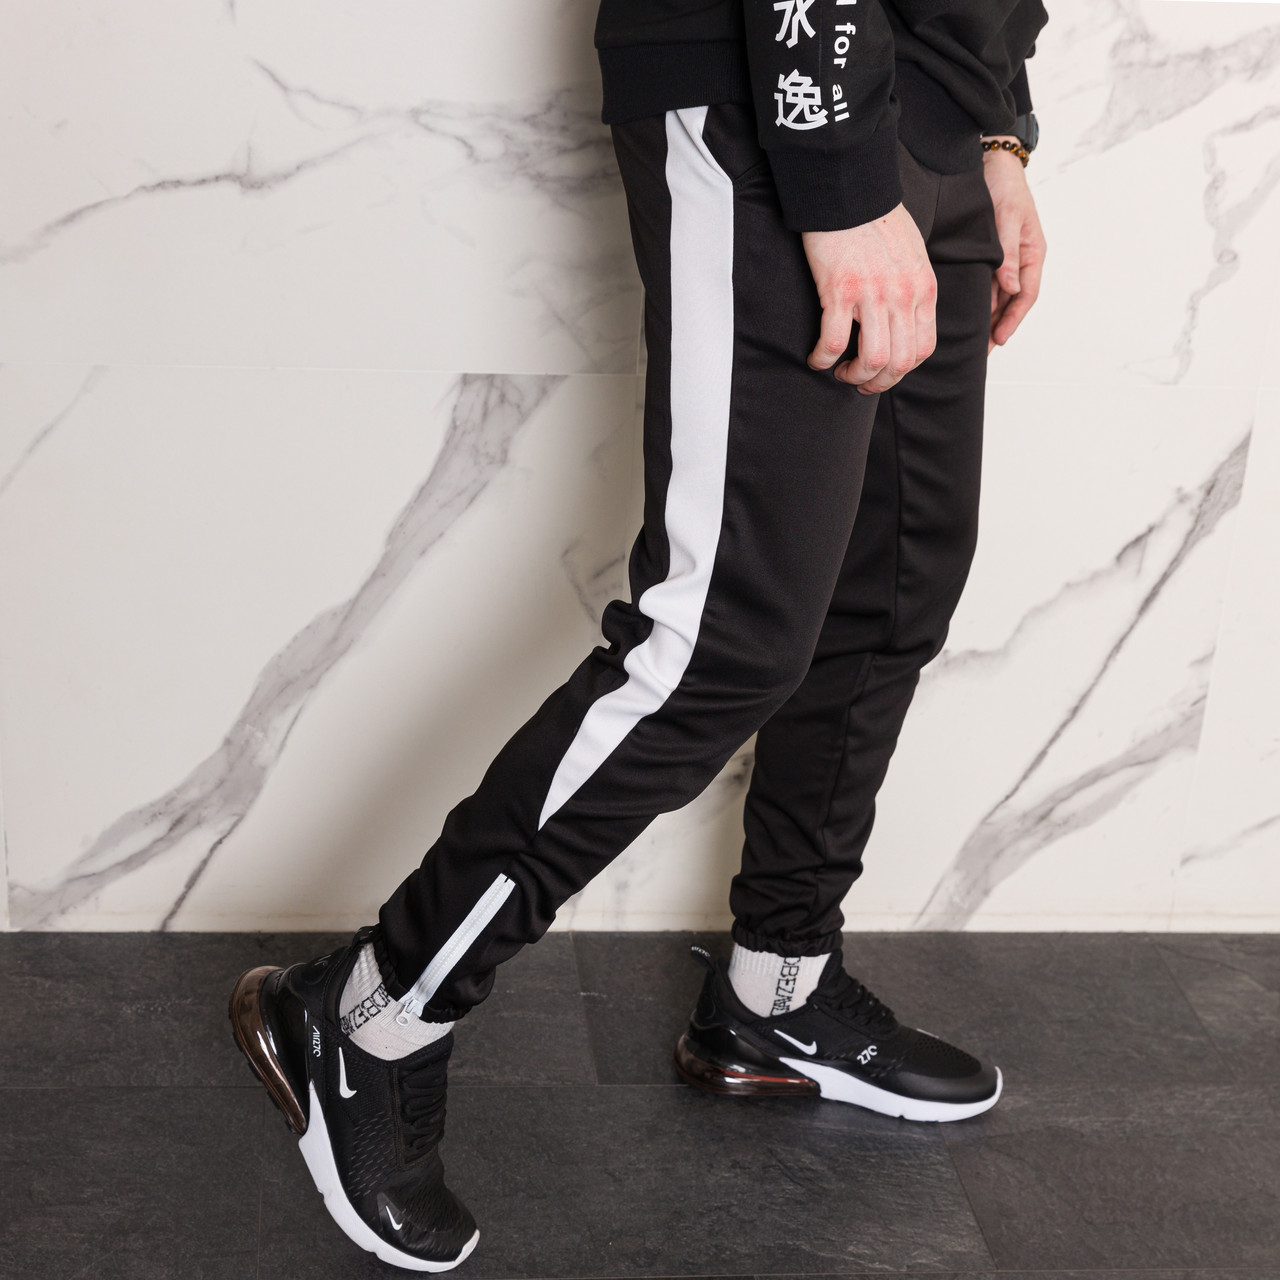 Спортивные штаны черные с белым лампасом мужские бренд ТУР модель Рокки (Rocky) TURWEAR - Фото 5